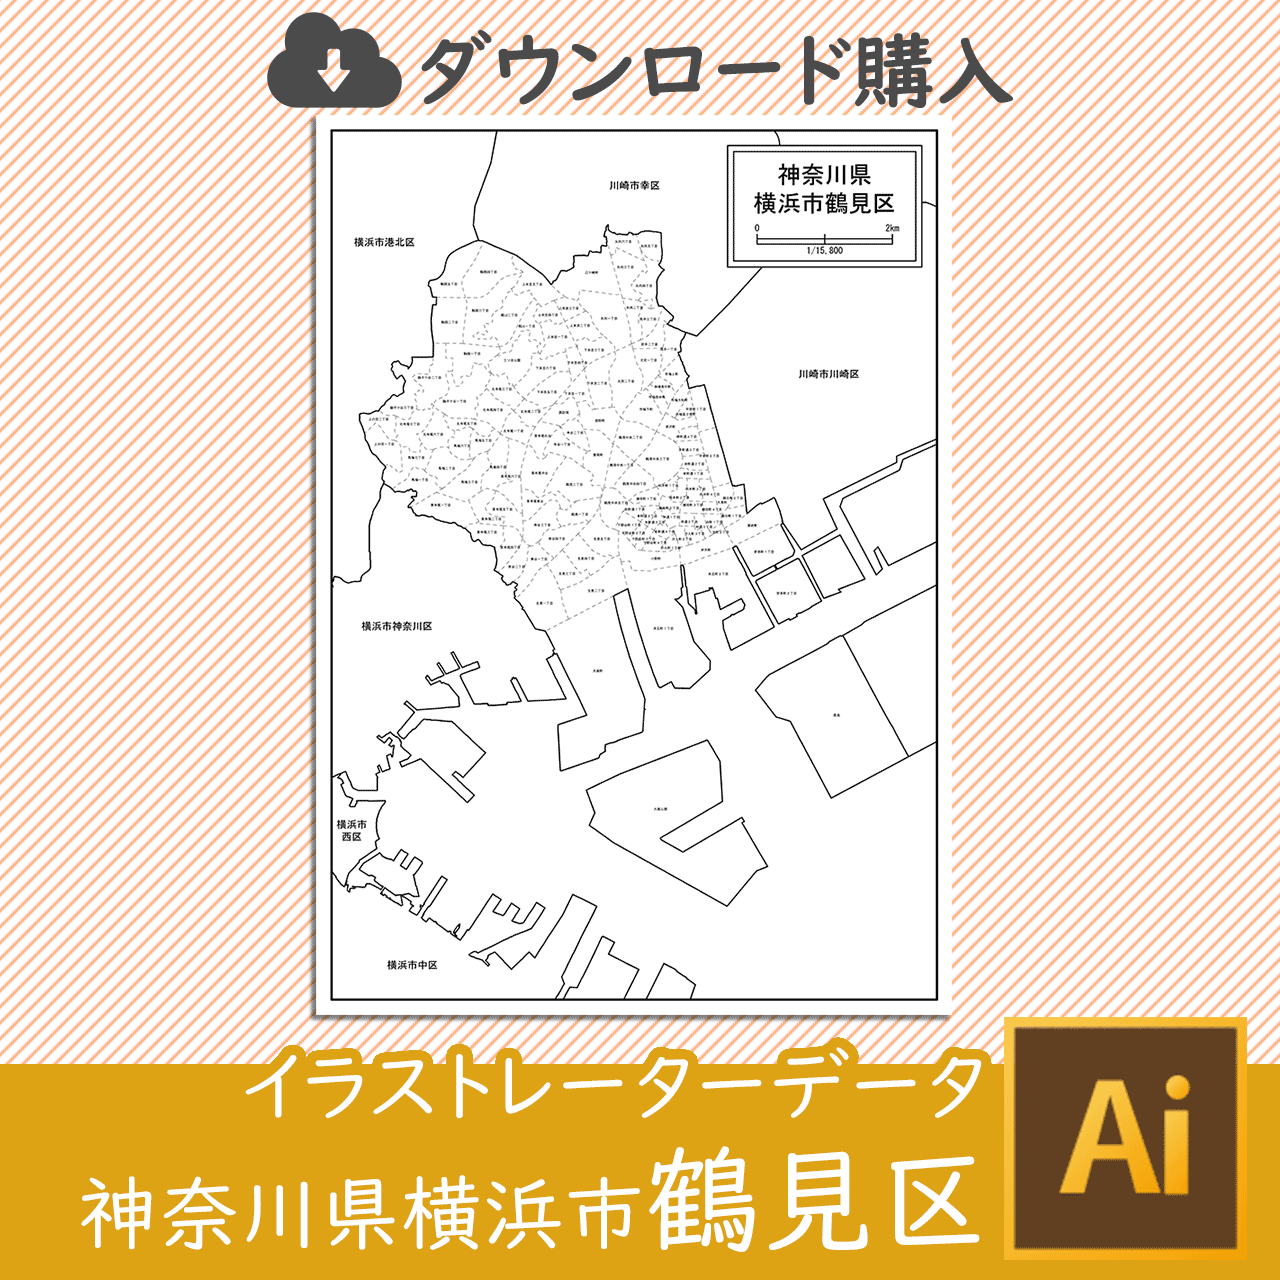 横浜市鶴見区の白地図のサムネイル画像